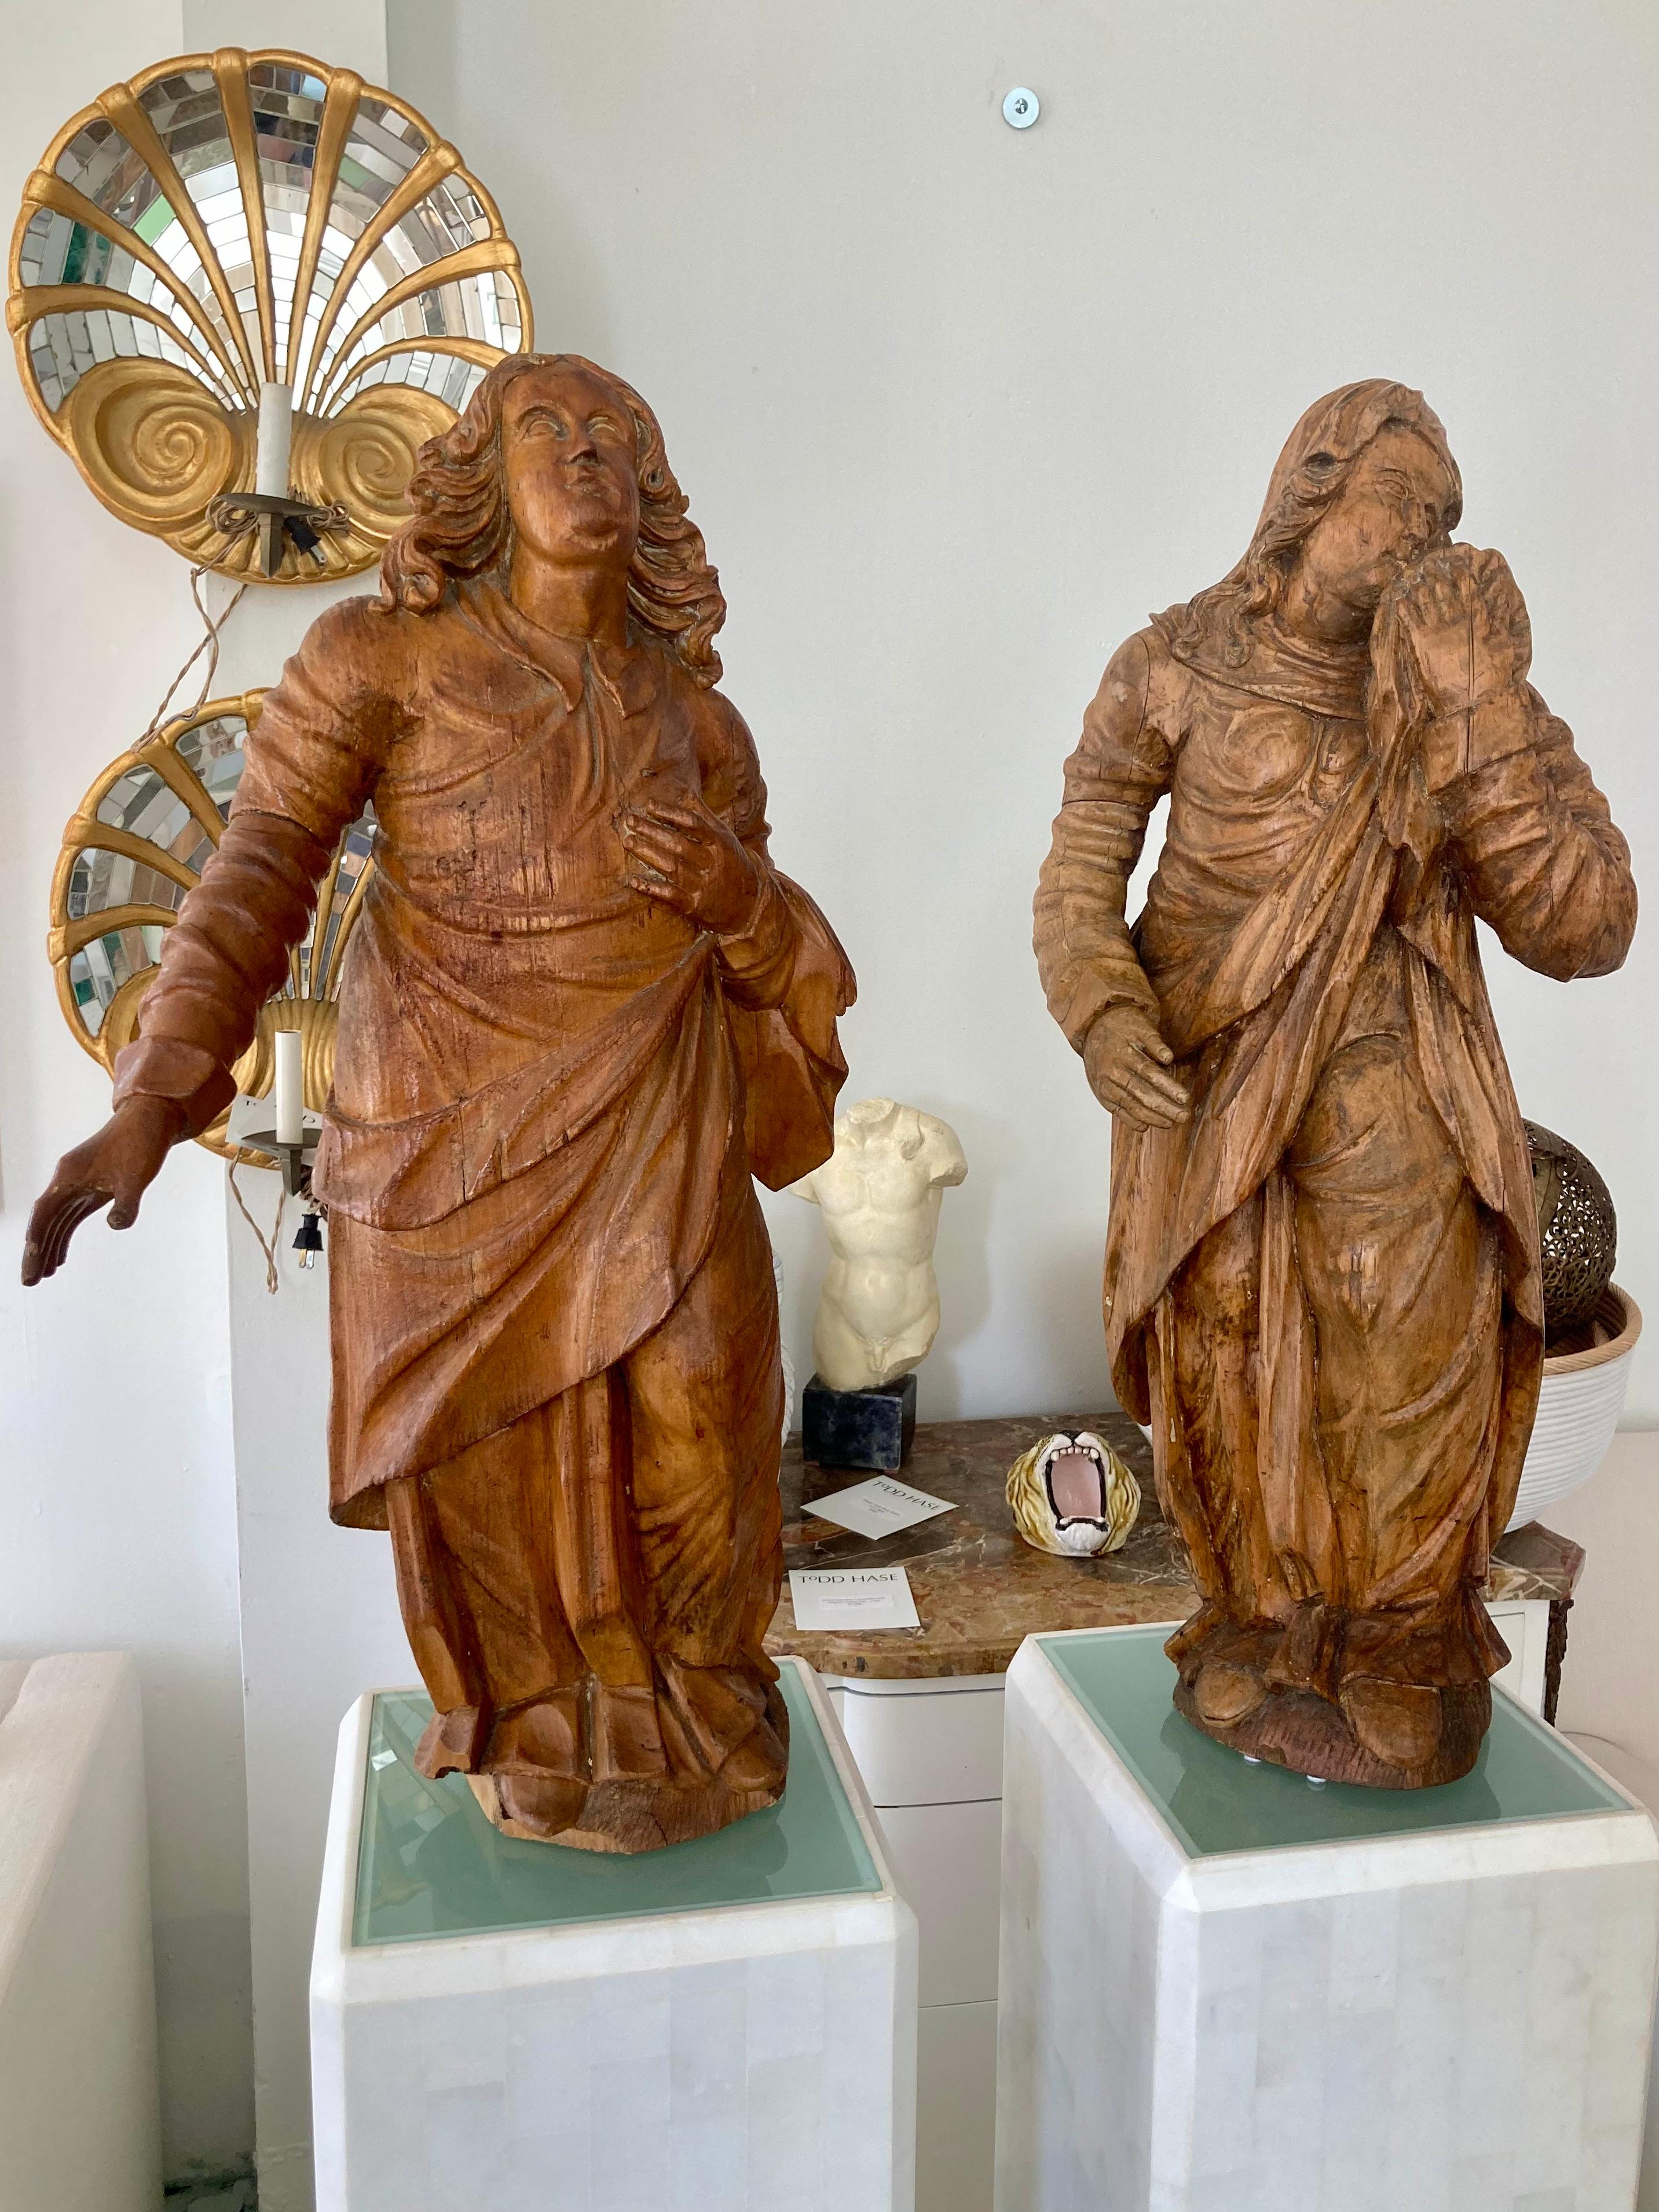 Wunderschönes Paar französischer Barockfiguren aus Holz des 17. Jahrhunderts. Erstaunliche Schnitzereien mit perfekt ausgearbeiteten Stoffen und Gesichtern. Jedes ist aus Massivholz in einem natürlichen Holzton gefertigt. Bringen Sie klassischen